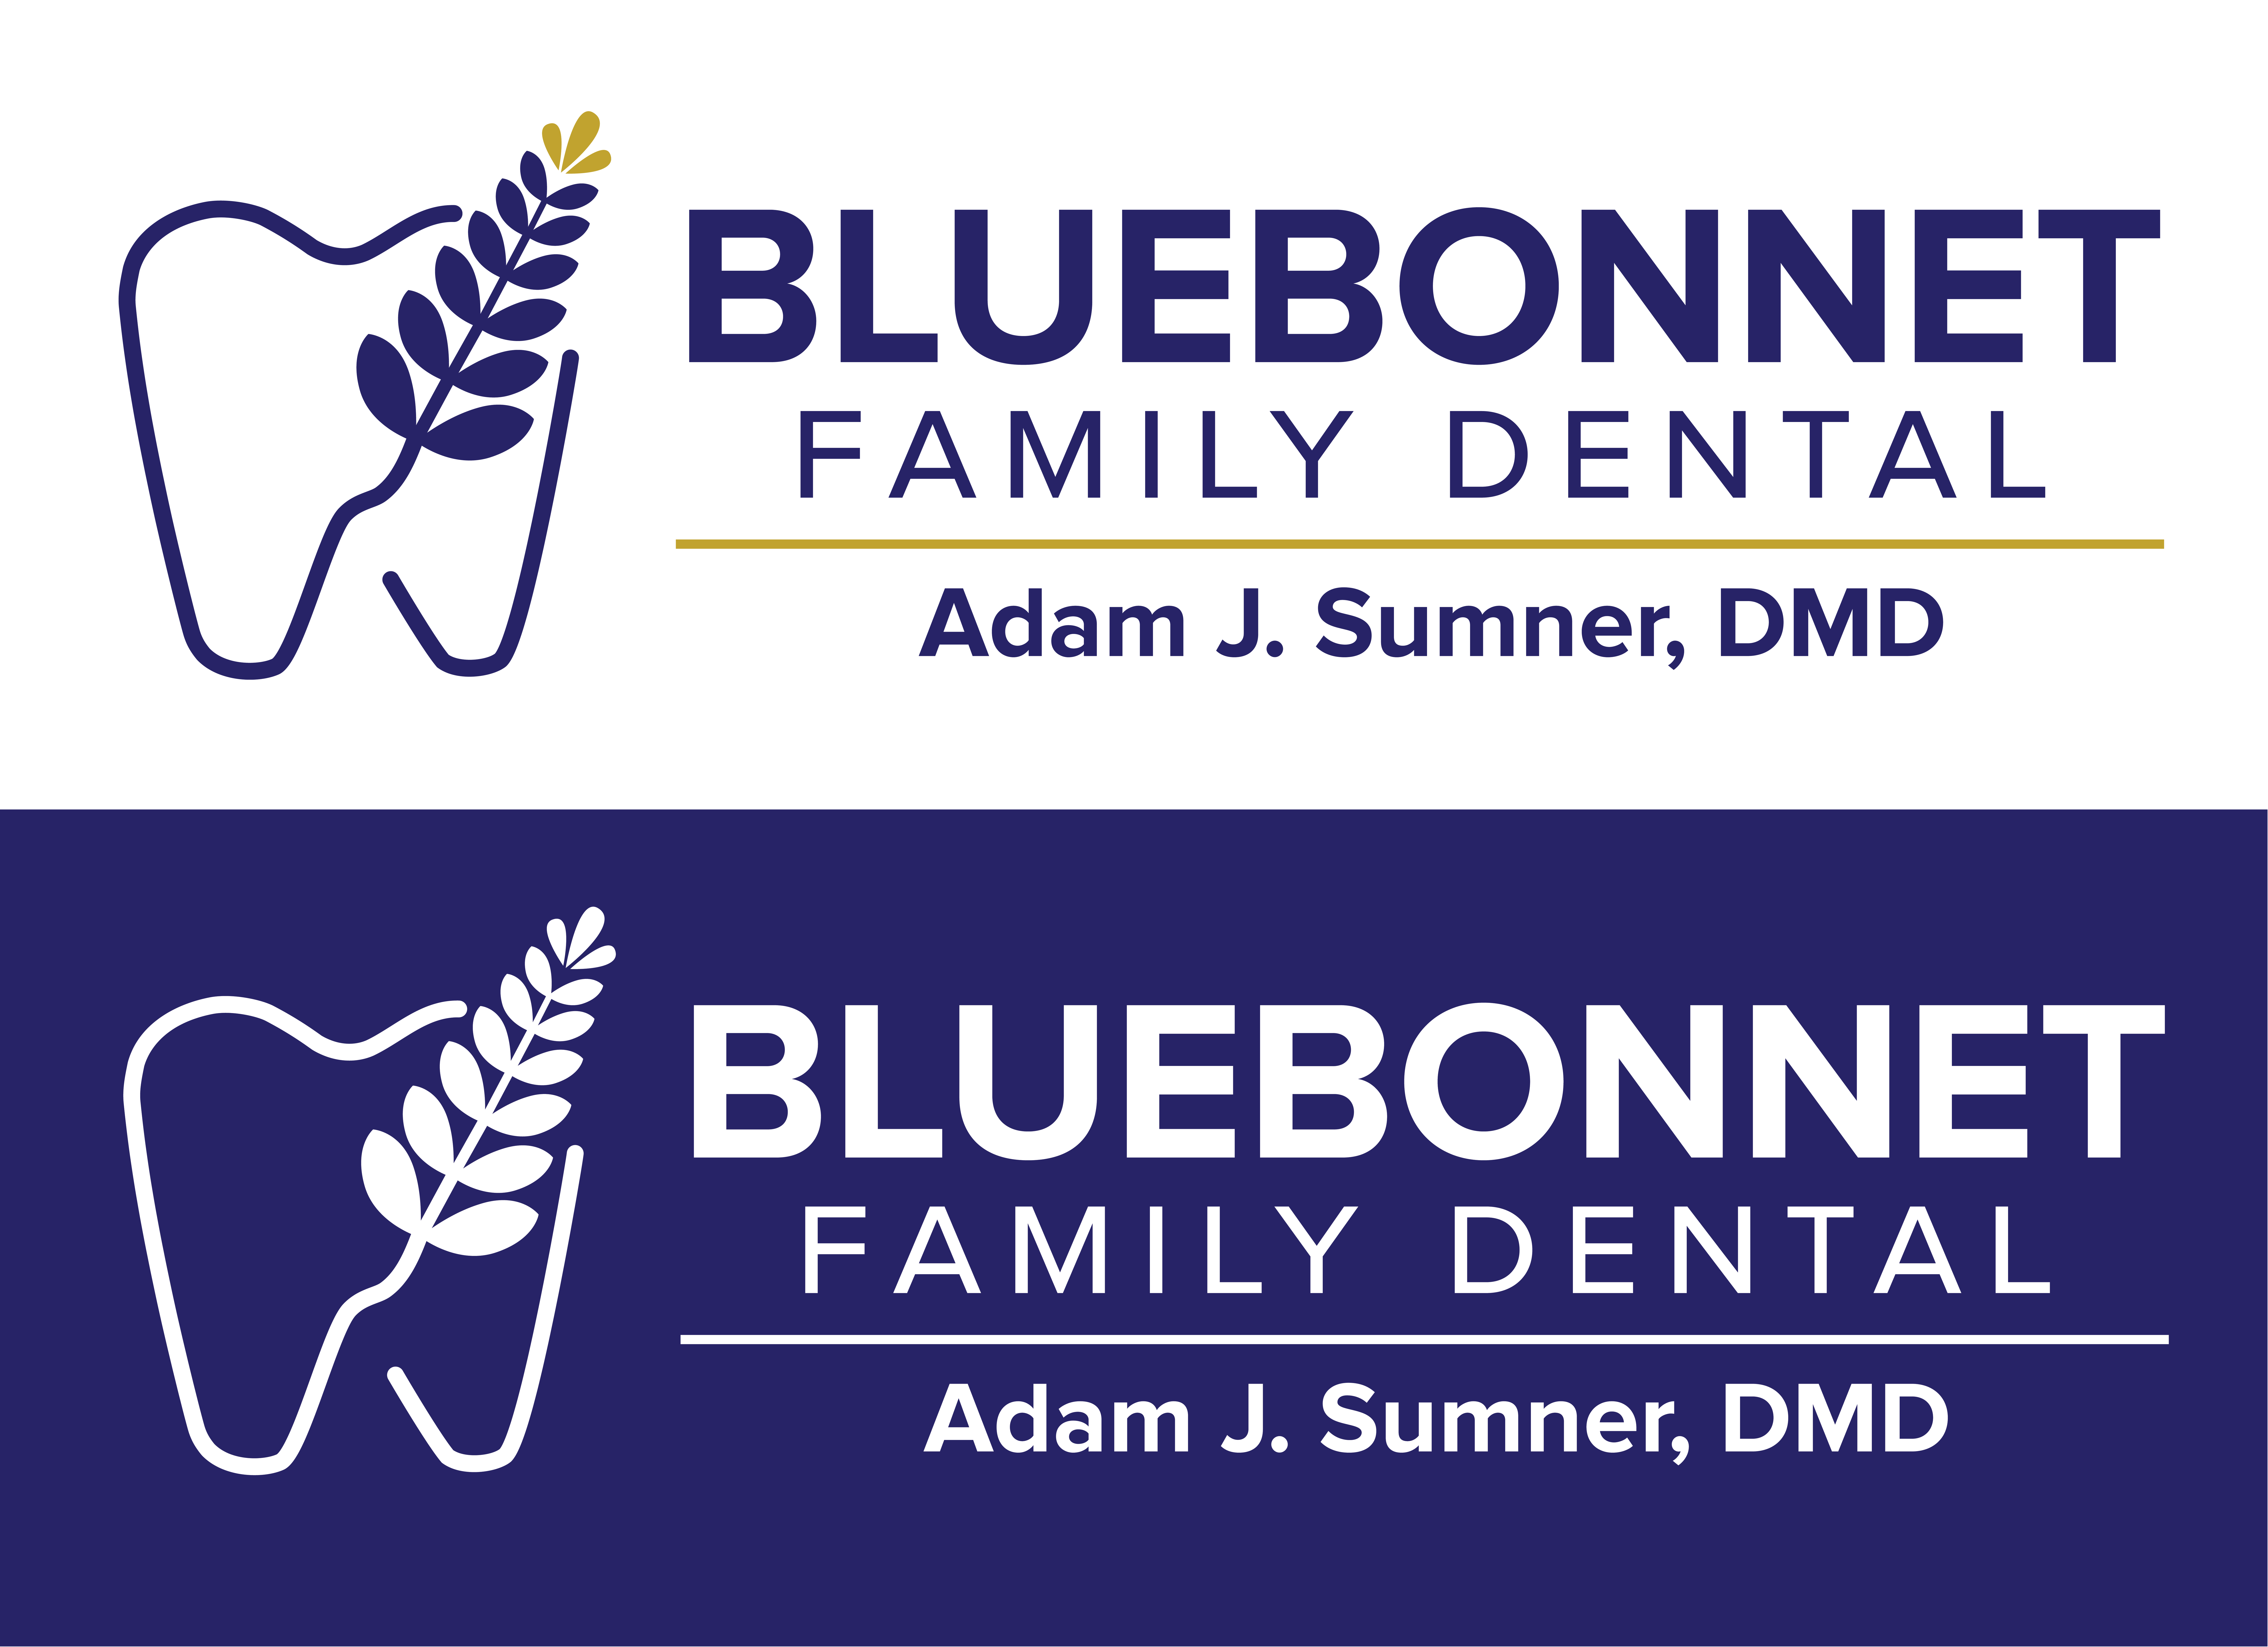 bluebonnet family dental